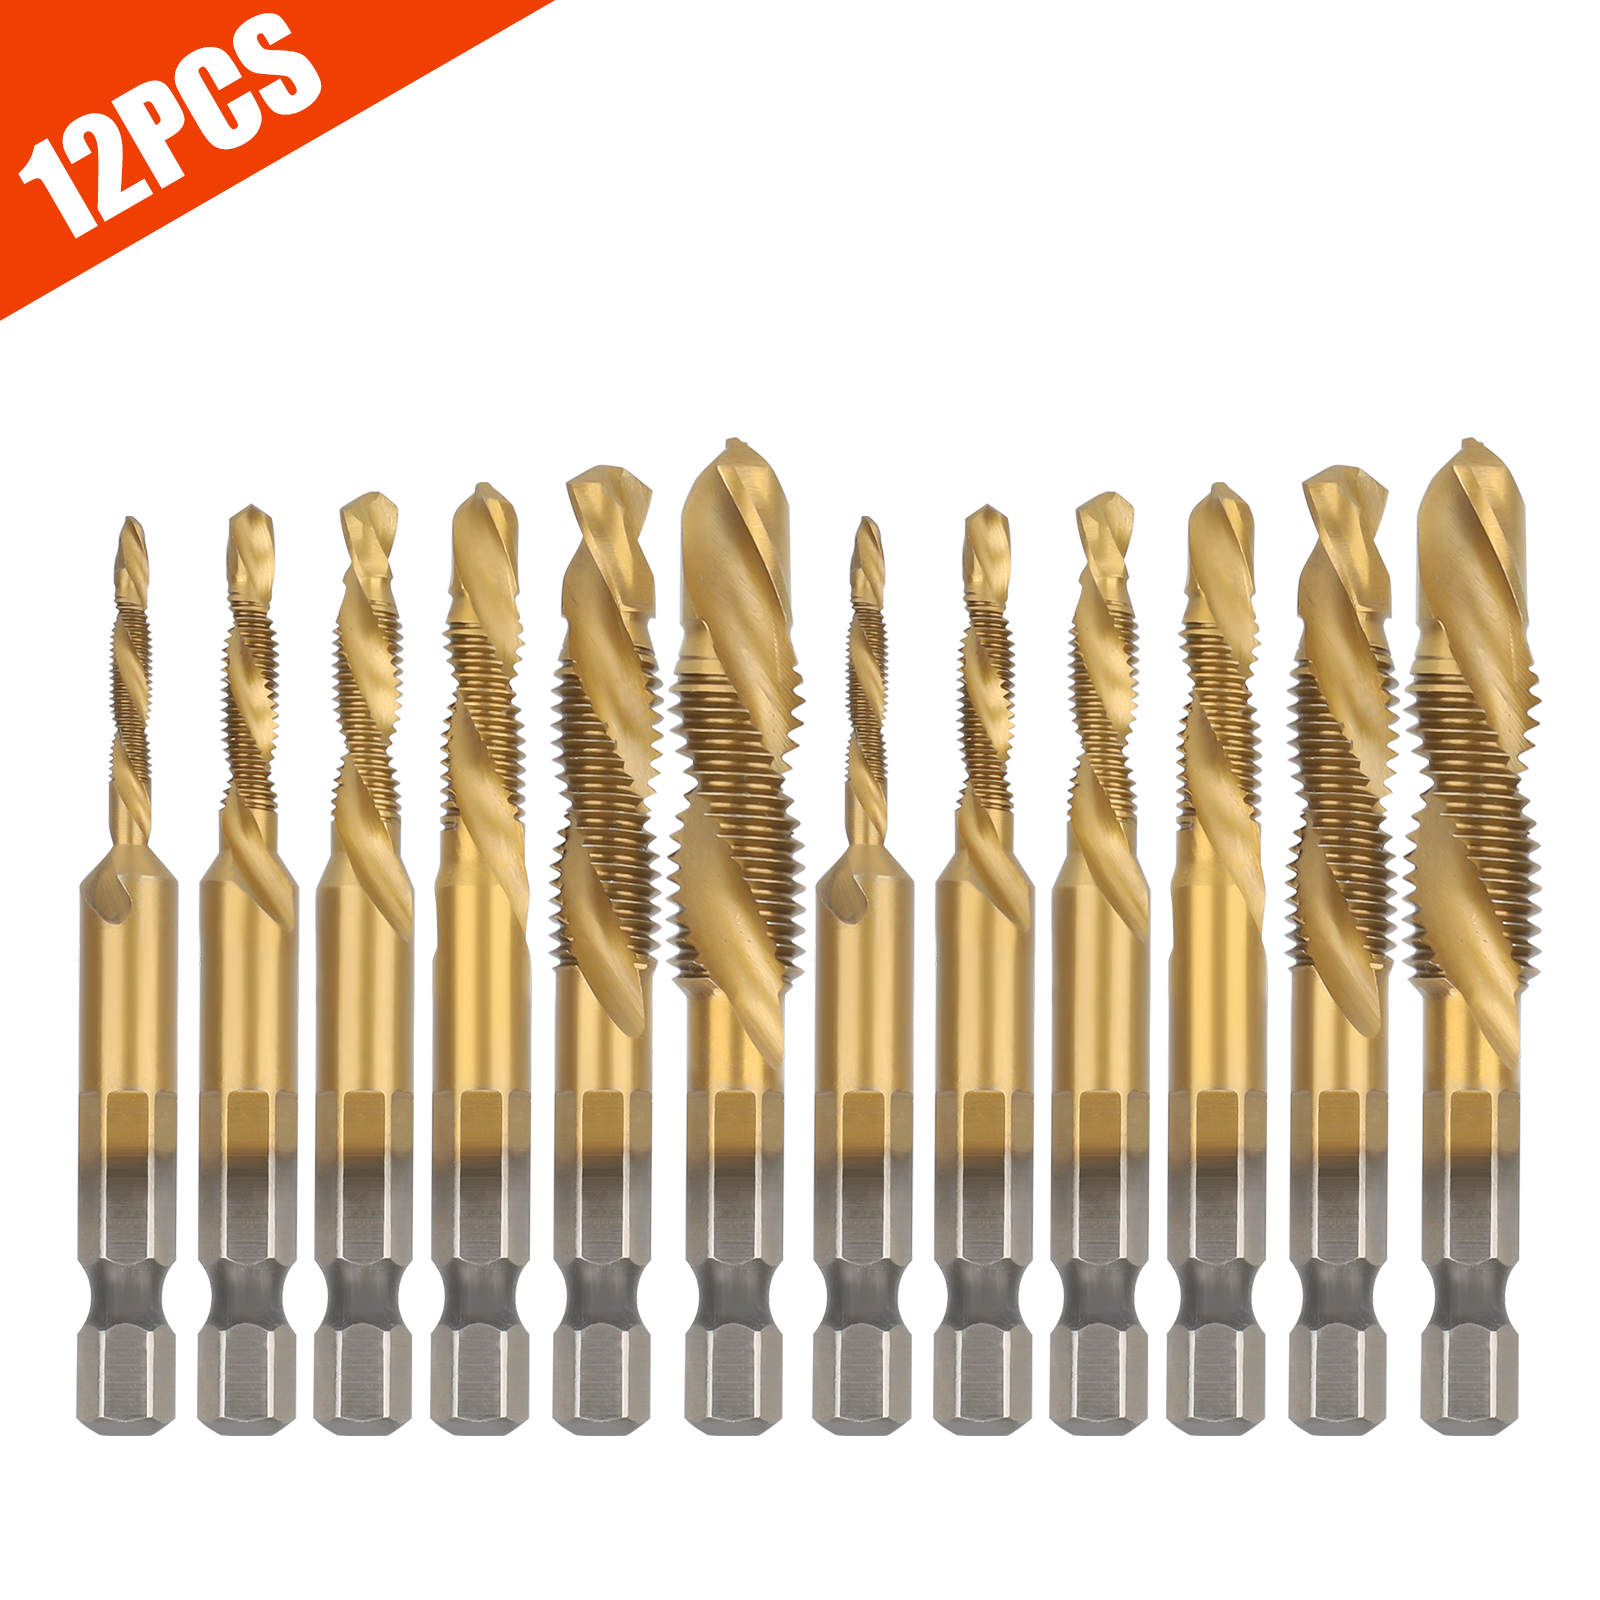 YRDZ Manual Tap Drill Bit HSS 4341 Spiral Point Thread M3 M4 M5 M6 M8 M10 Metal Processing Hexagonal Shank Machine Tap Kit Metric Plug Thread Diameter : M6